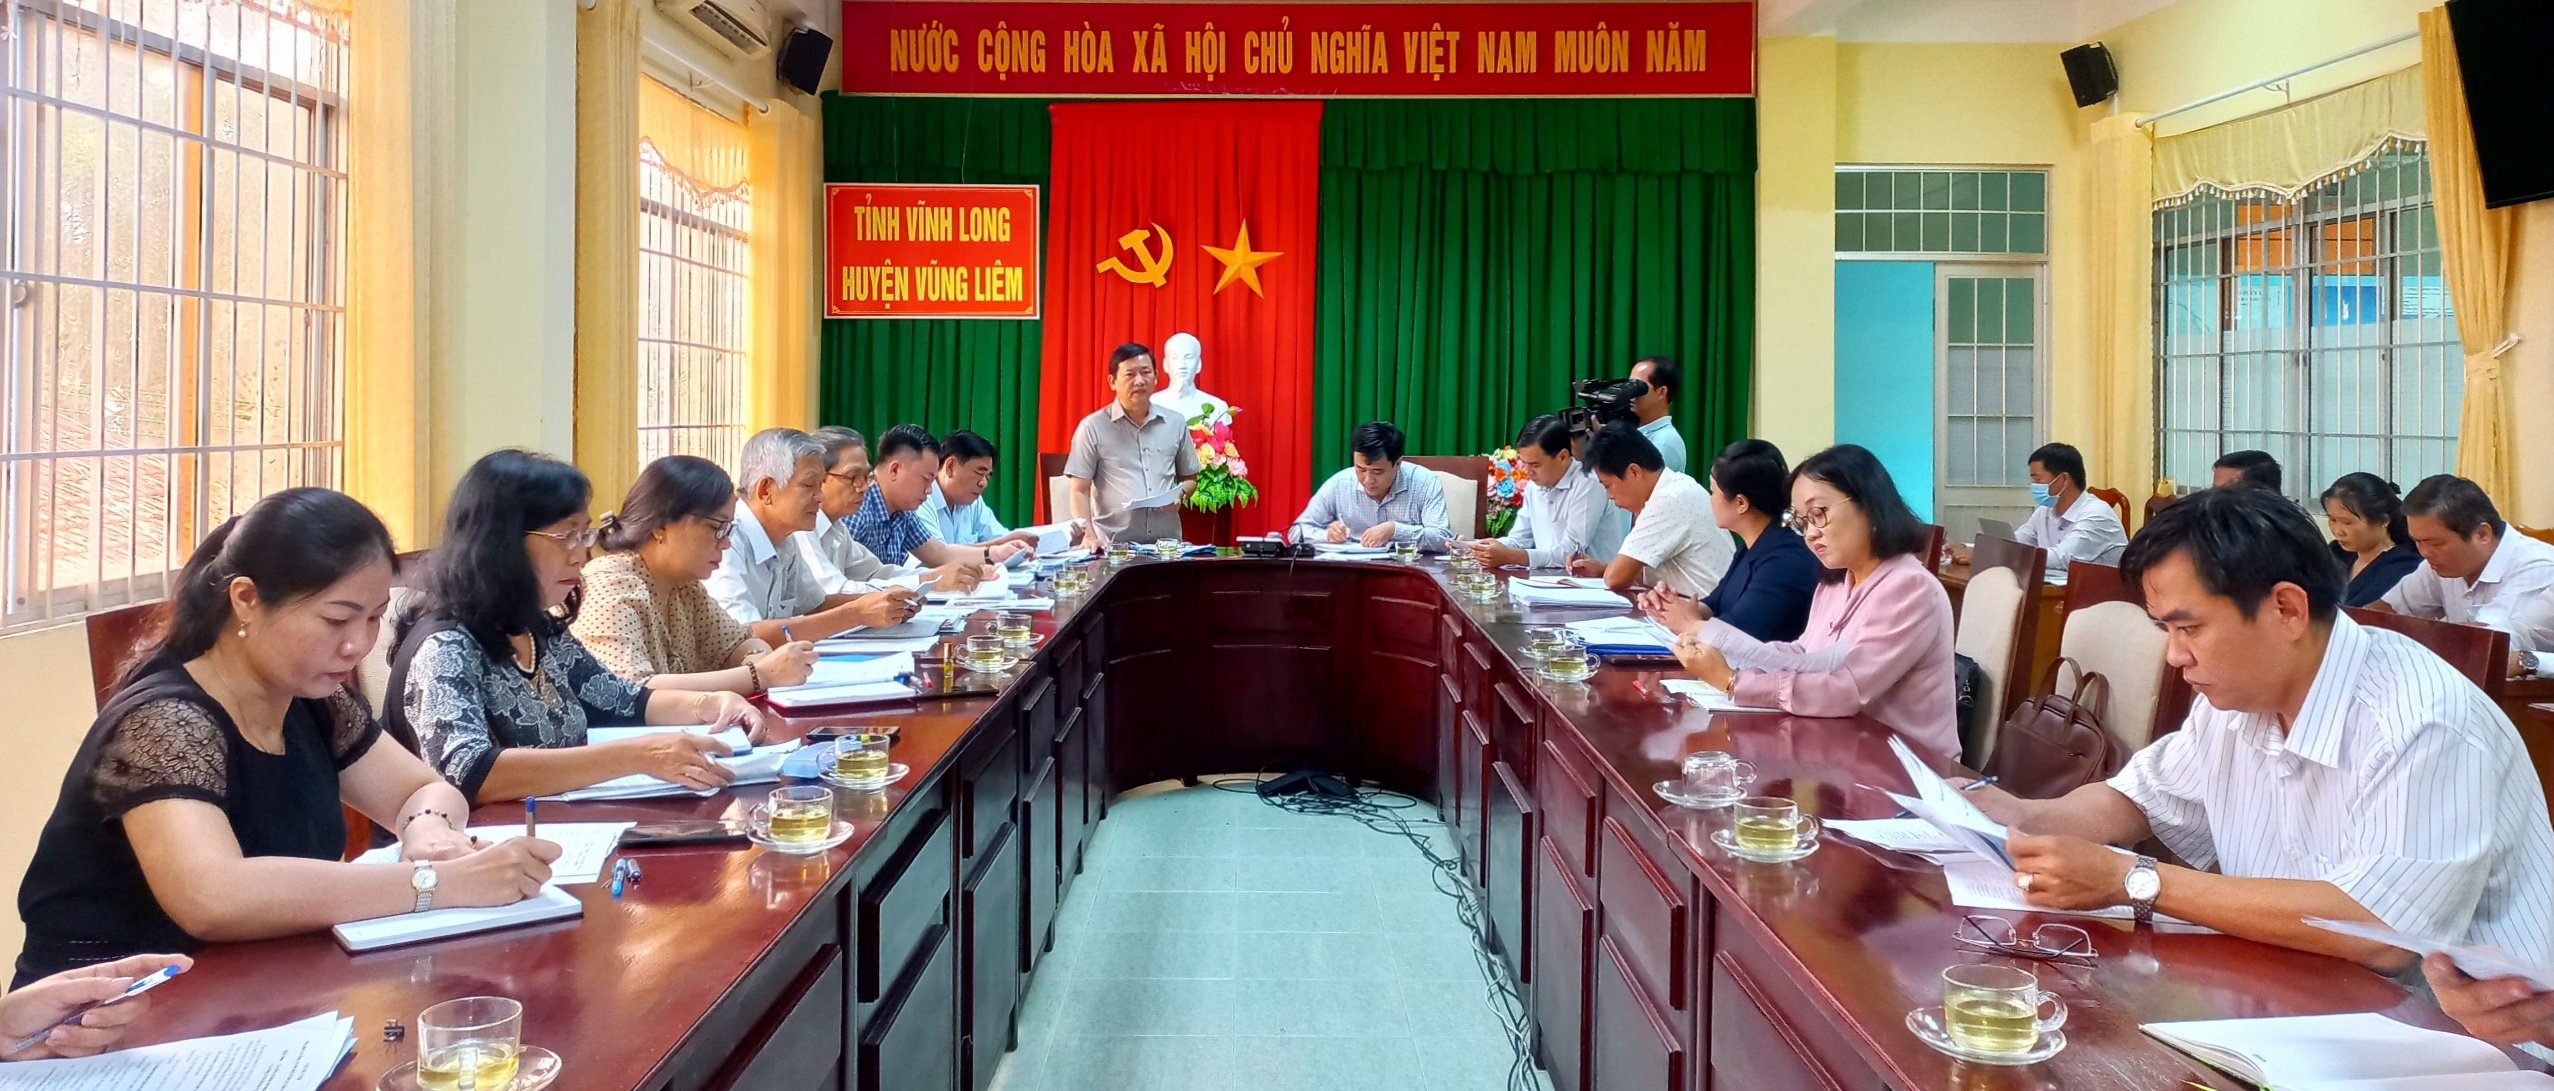 Đoàn giám sát làm việc tại huyện Vũng Liêm.